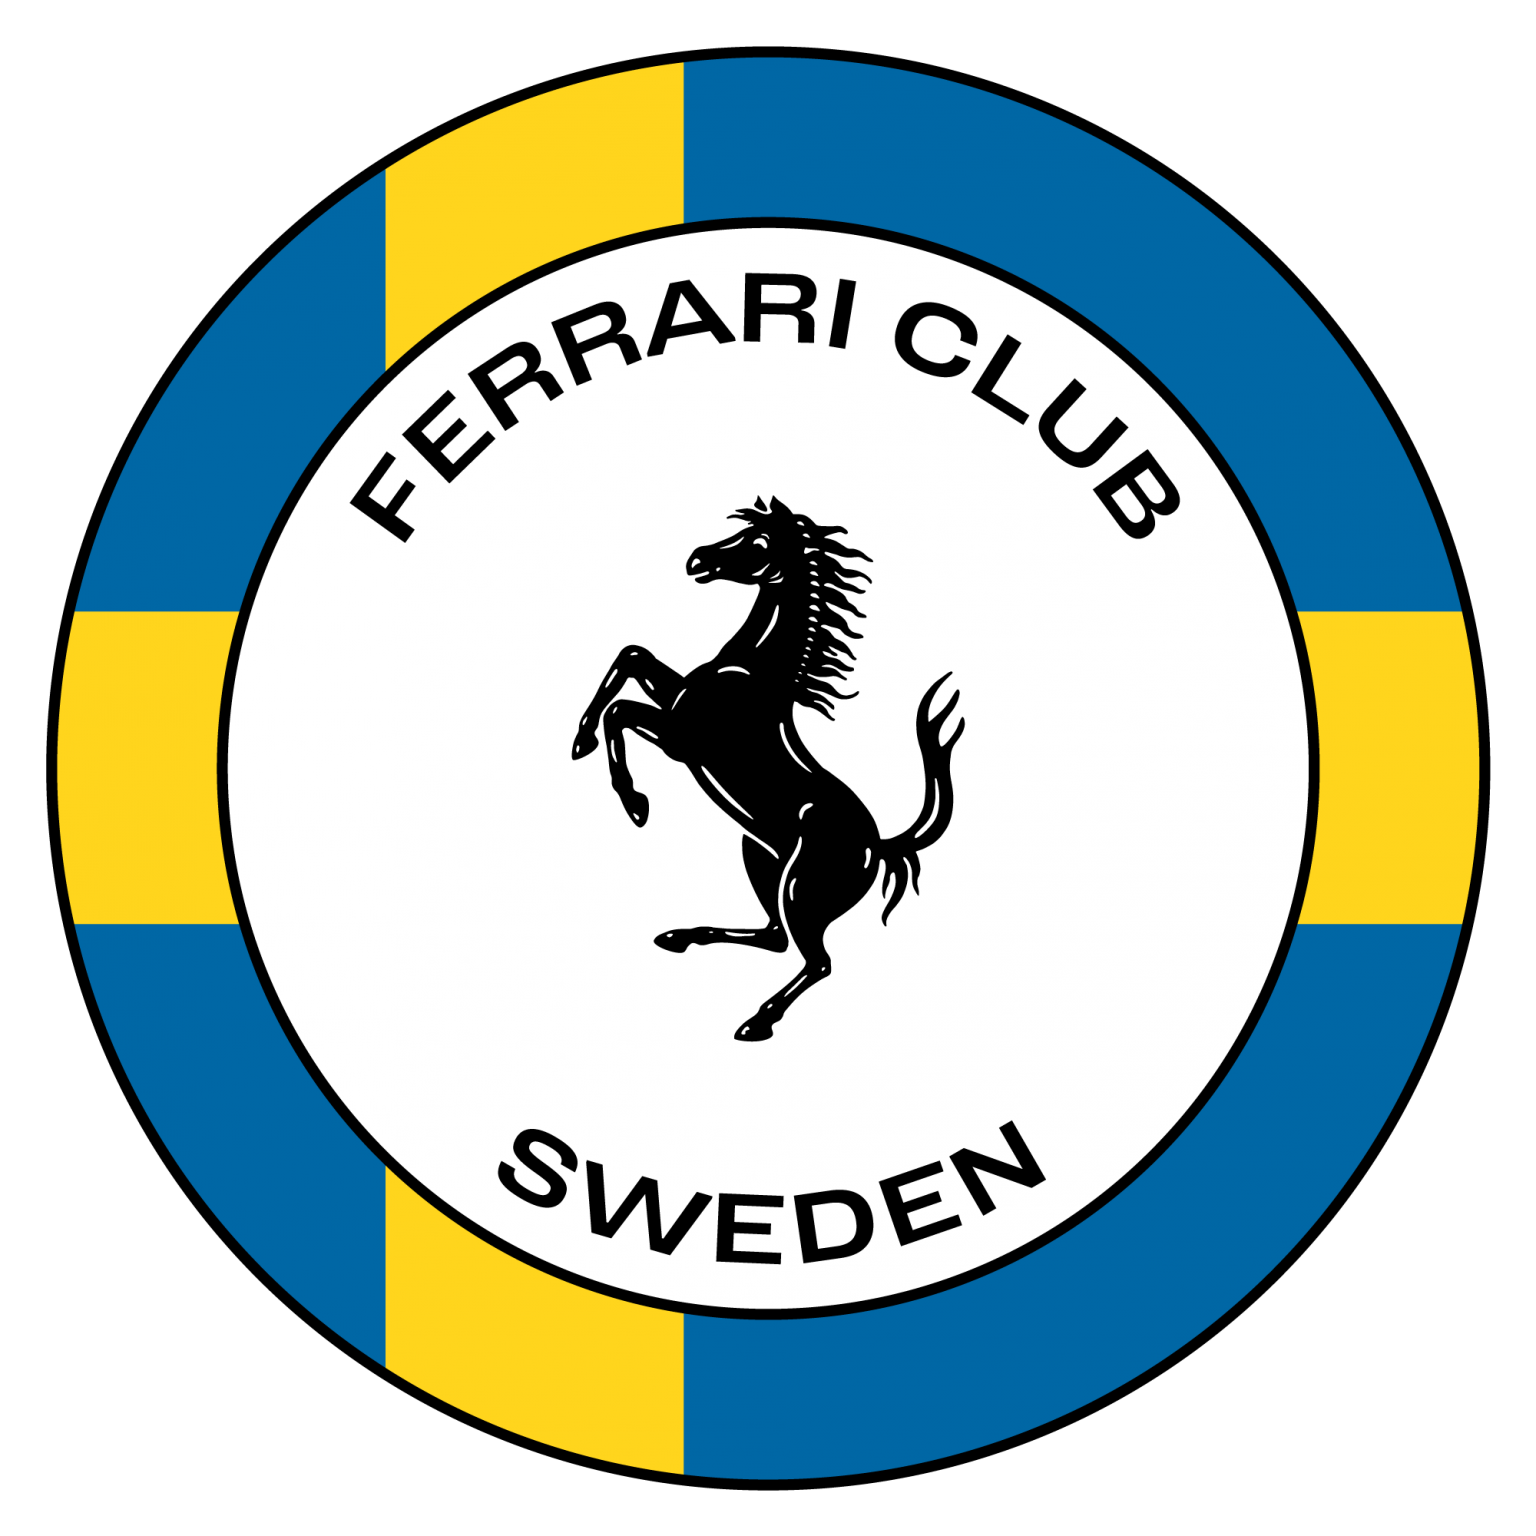 Ferrari Club Sweden Logo